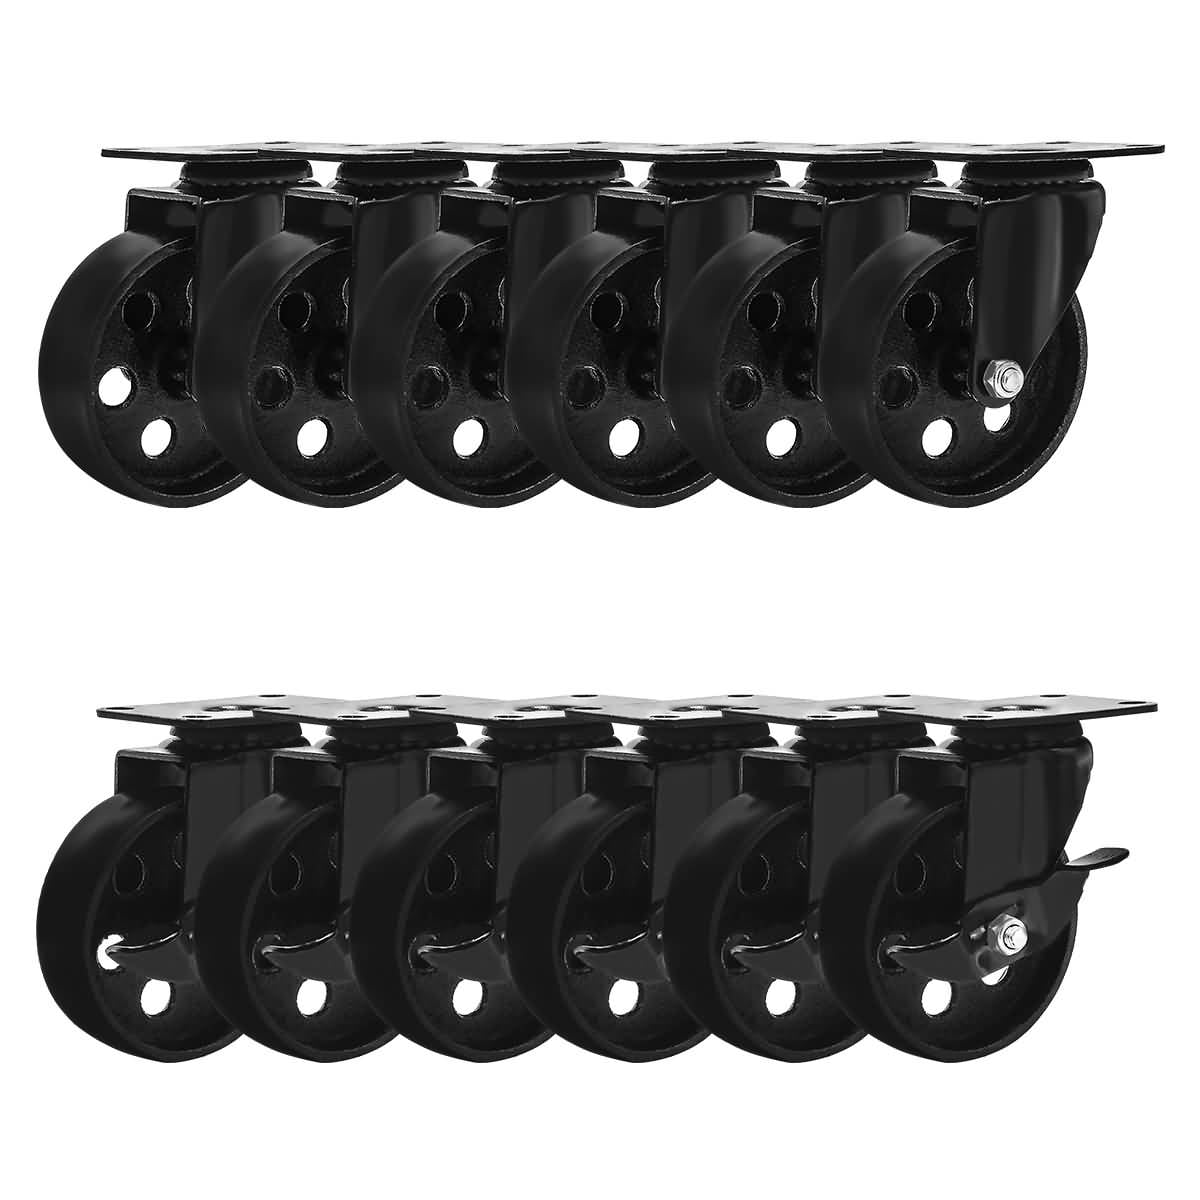 12 All Black Metal Swivel Plate Caster Wheel w/ Brake Lock Heavy Duty 3" Combo 